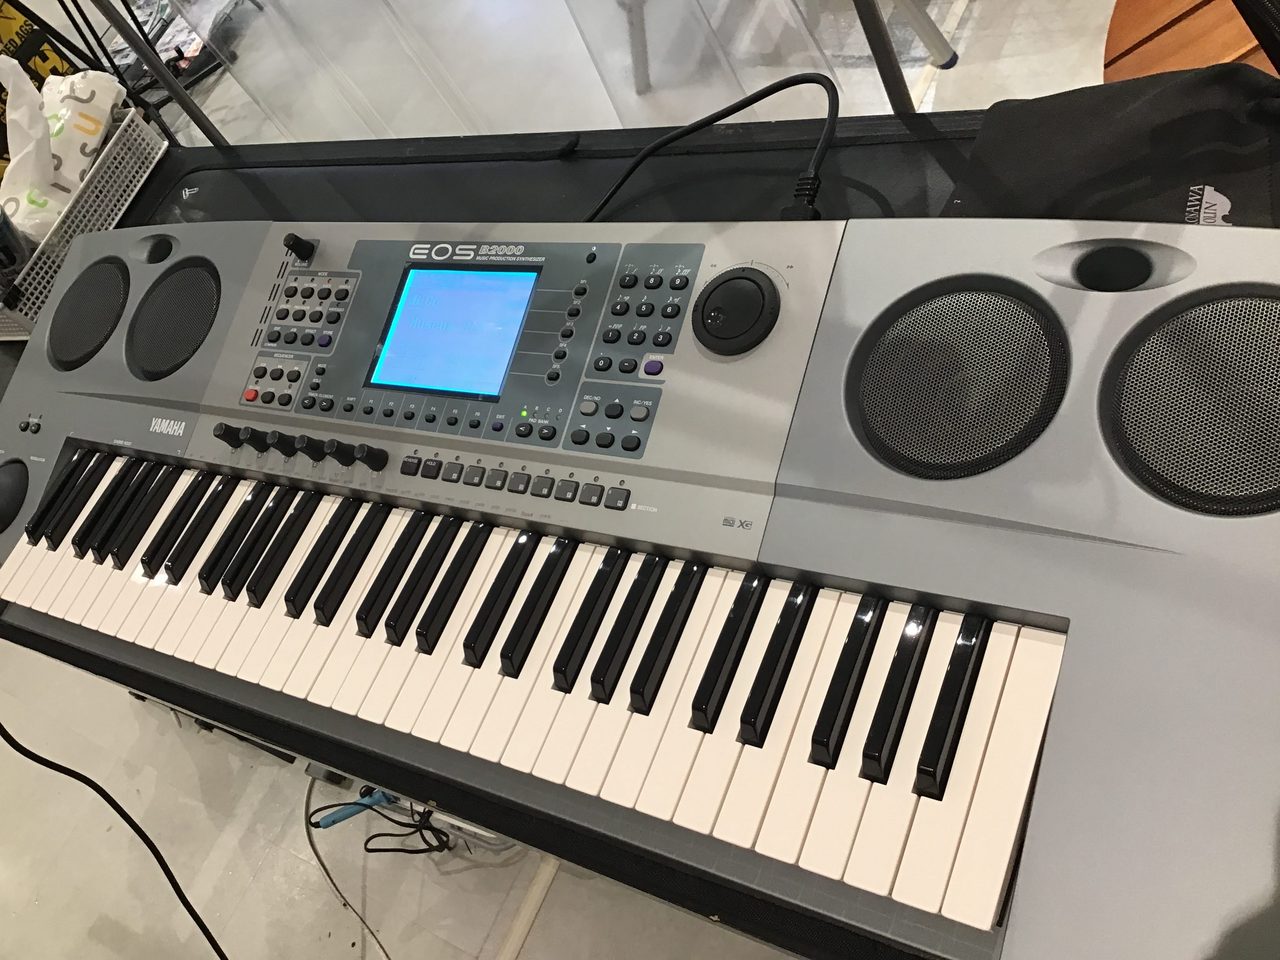 ヤマハ YAMAHA EOS B2000 シンセサイザー キーボード - 鍵盤楽器